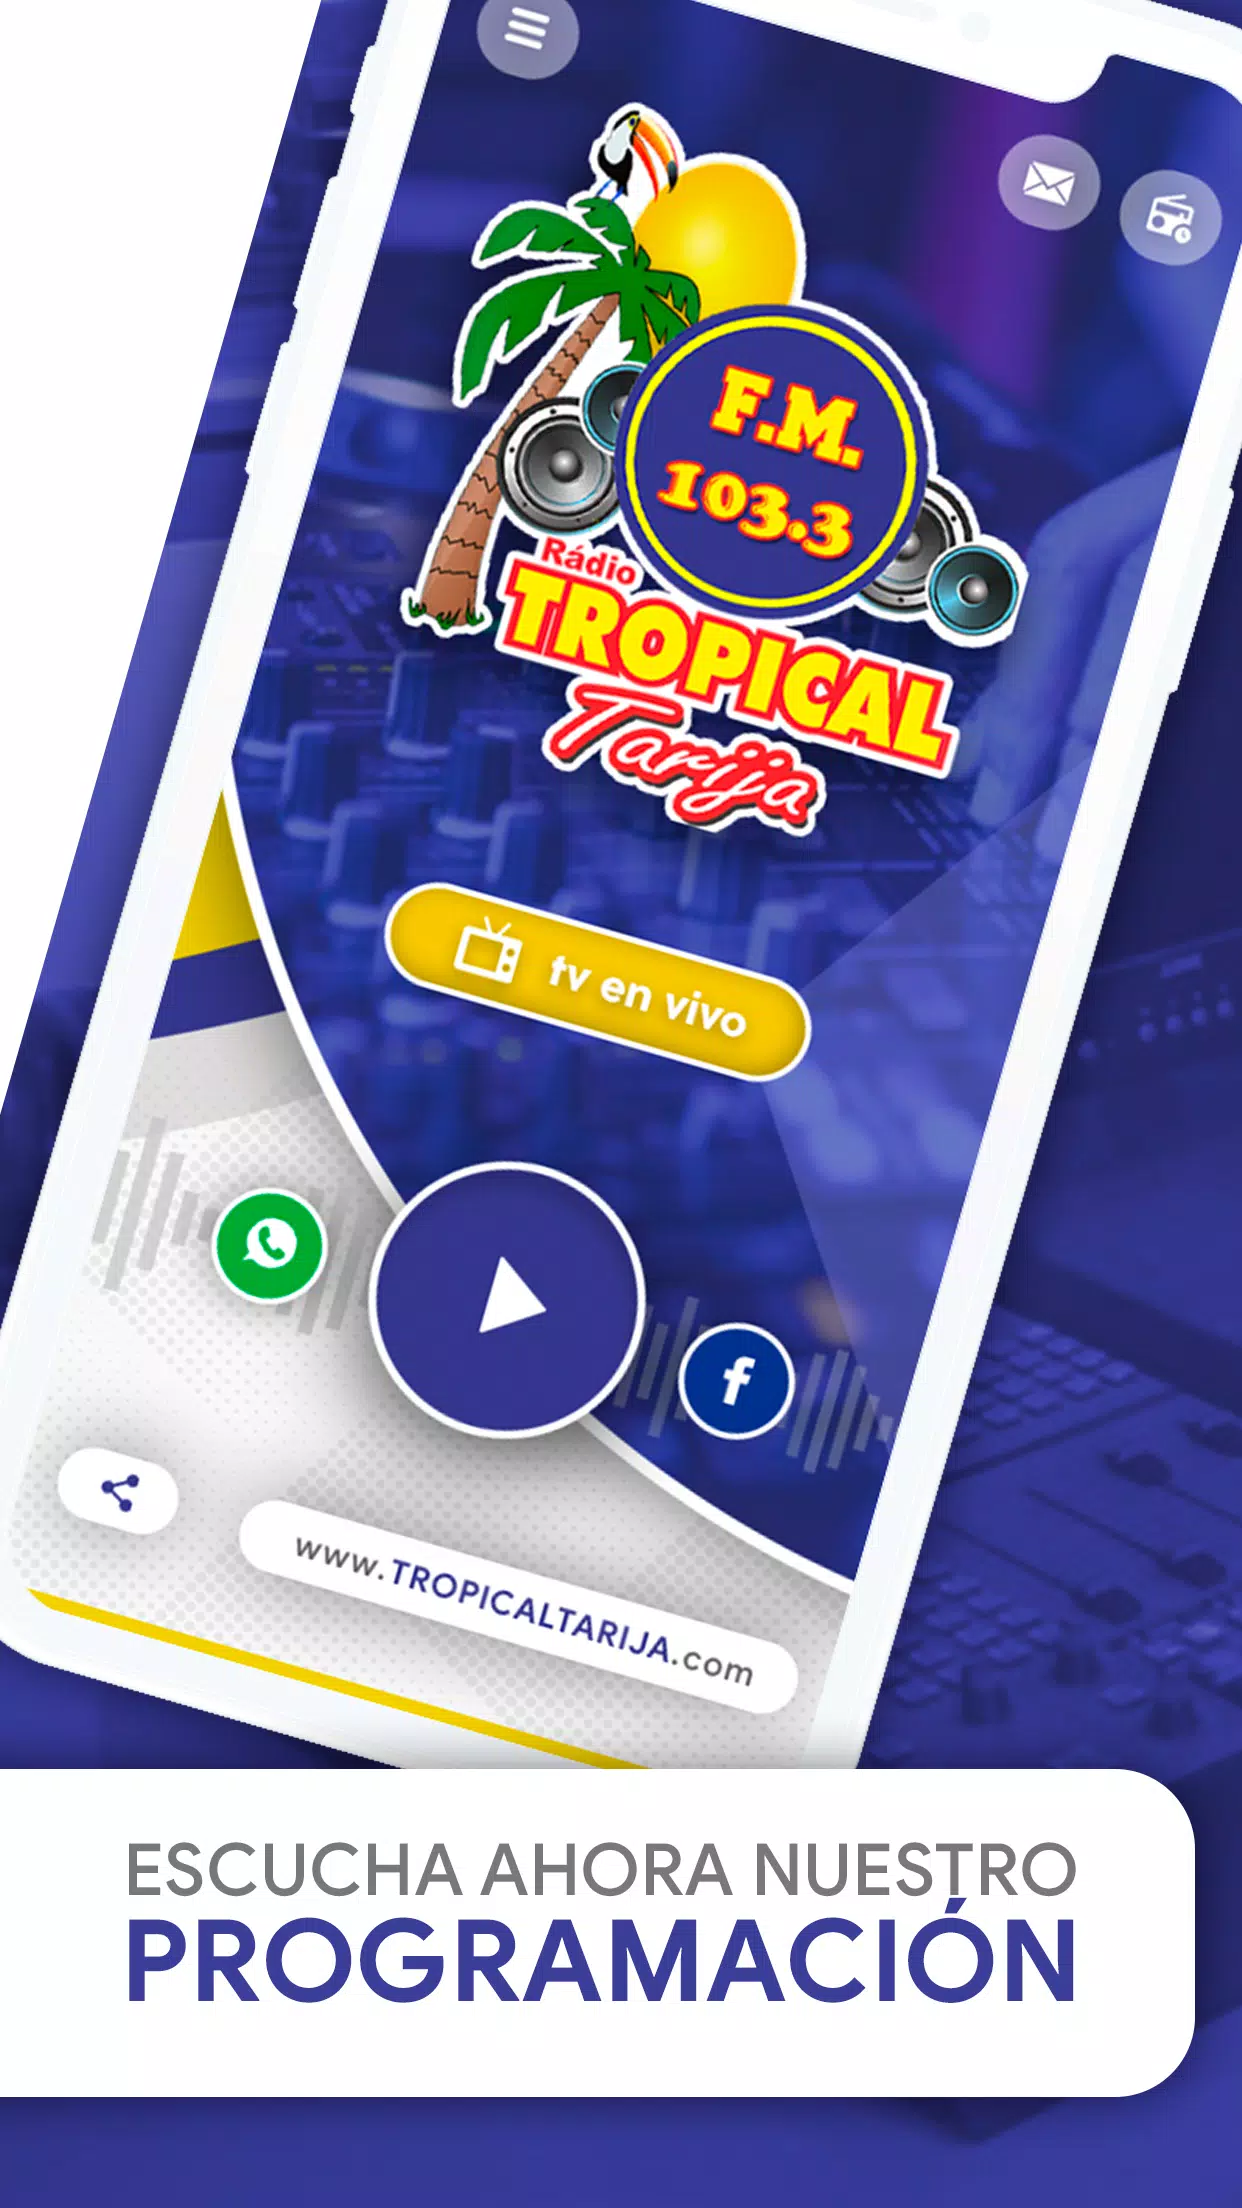 Radio Tropical Tarija APK for Android Download